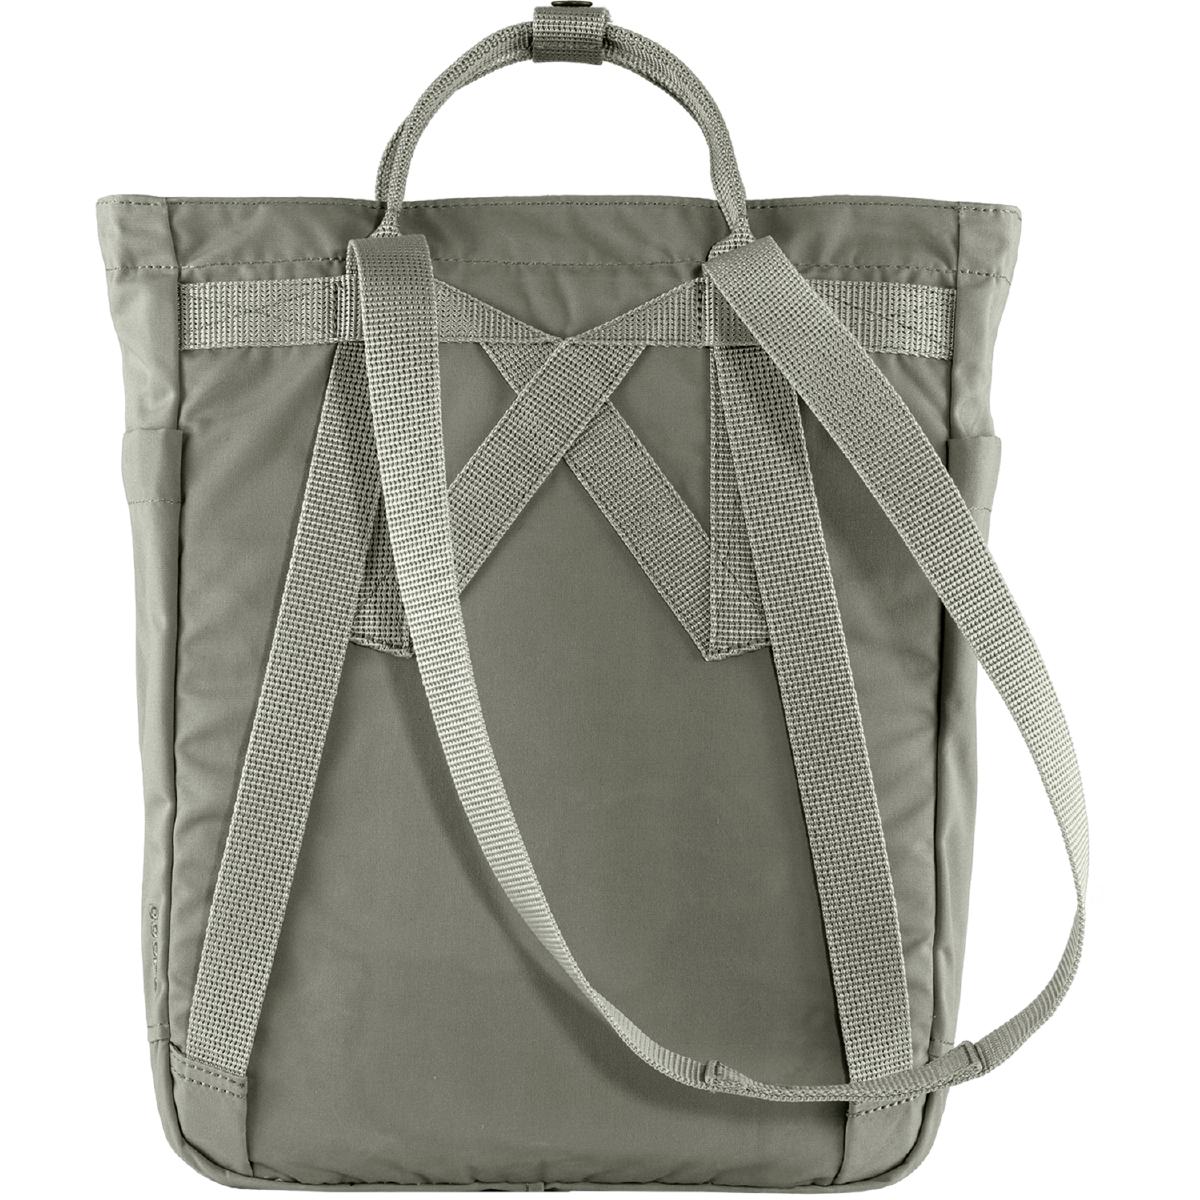 Fjäll Räven Tasche Kanken Totepack praktische, zum Rucksack umwandelbare Tragetasche aus robustem Material.